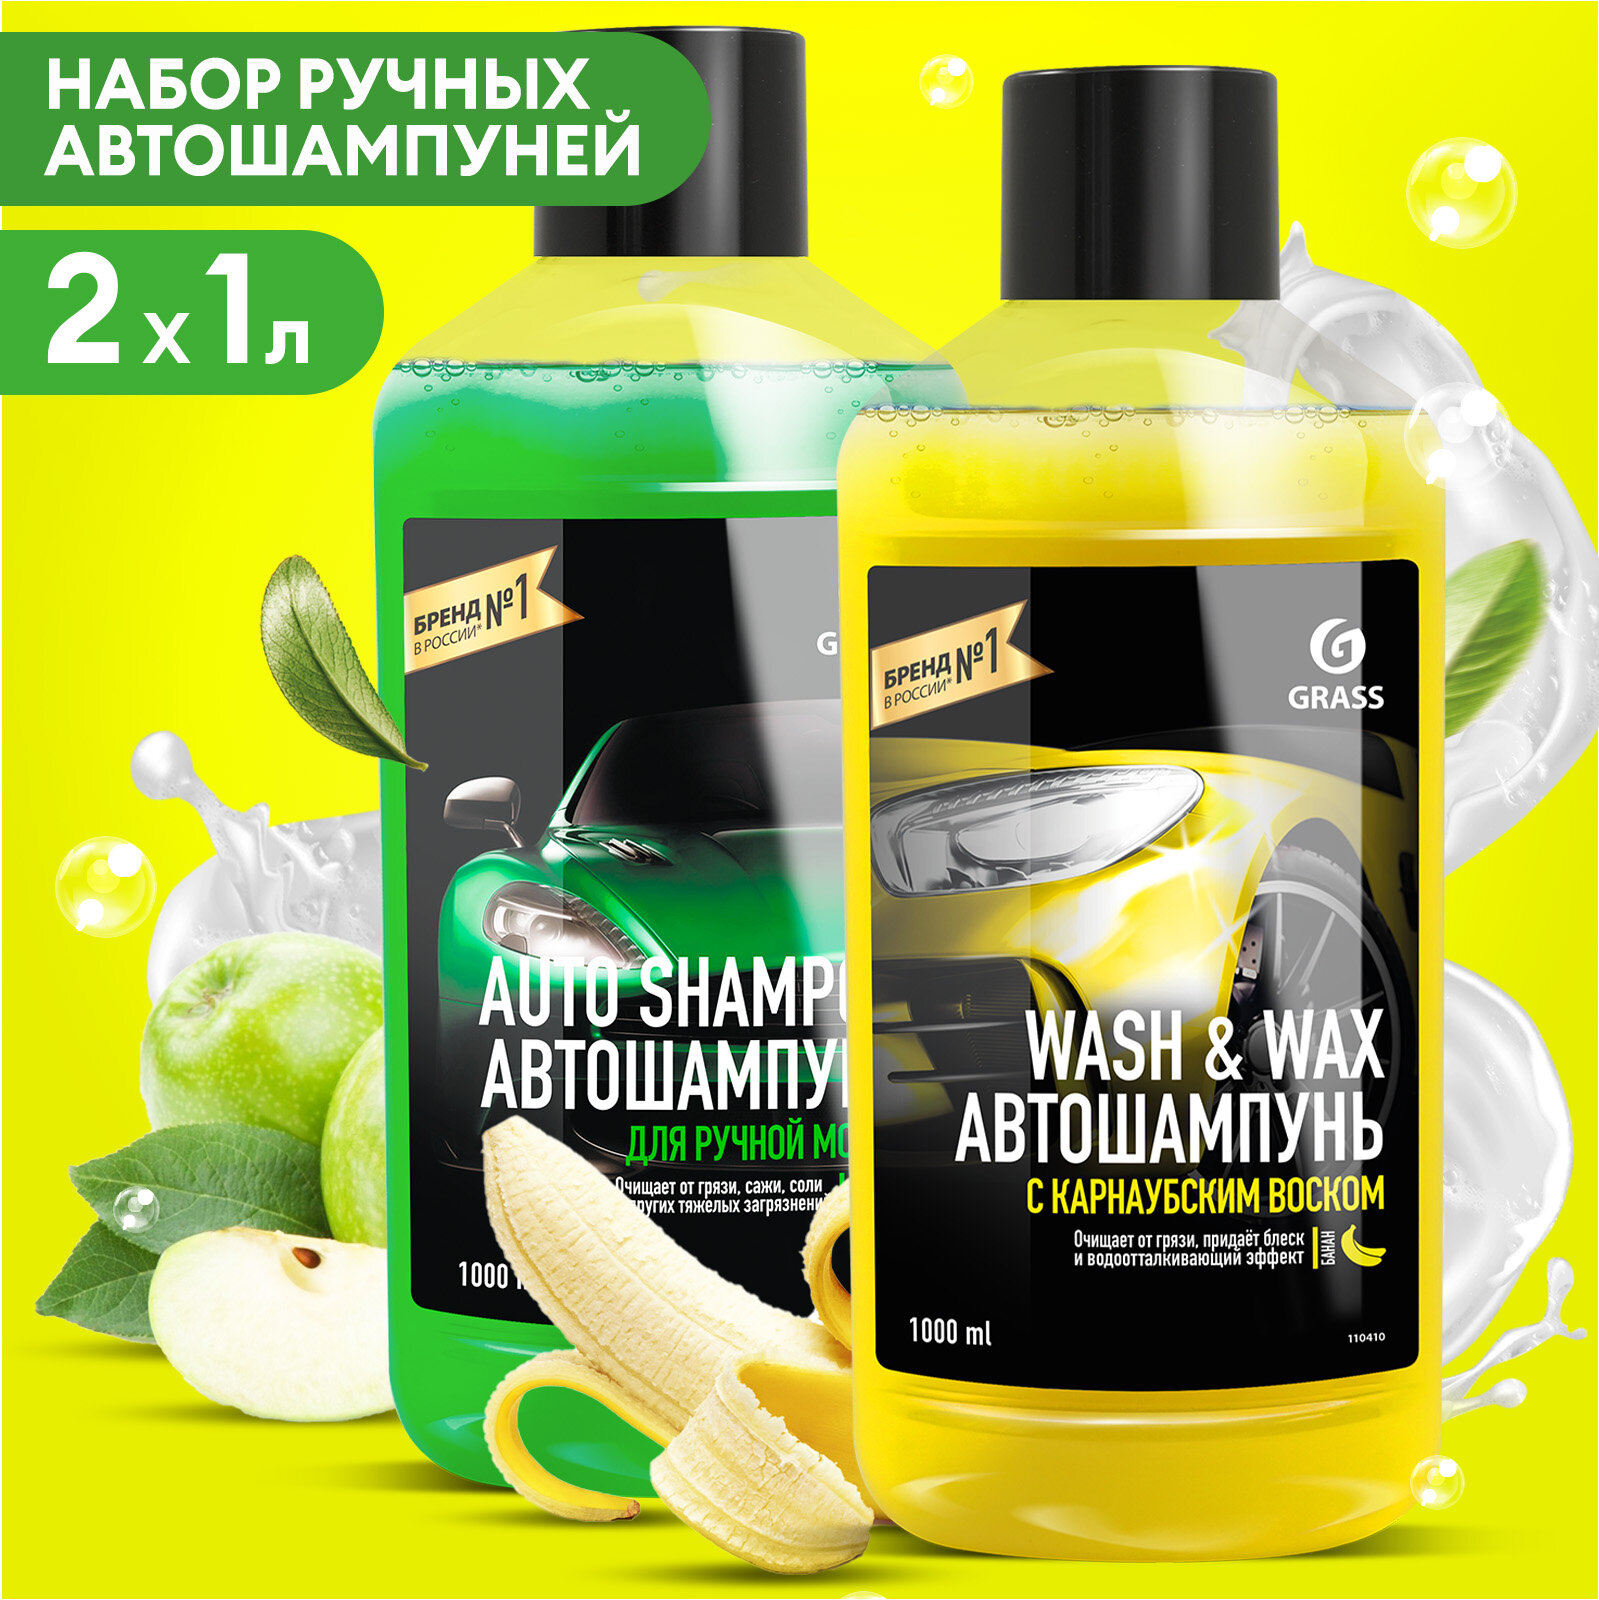 Набор автошампуней GrassAuto Shampoo и Wash & Wax набор 2 шт по 1л